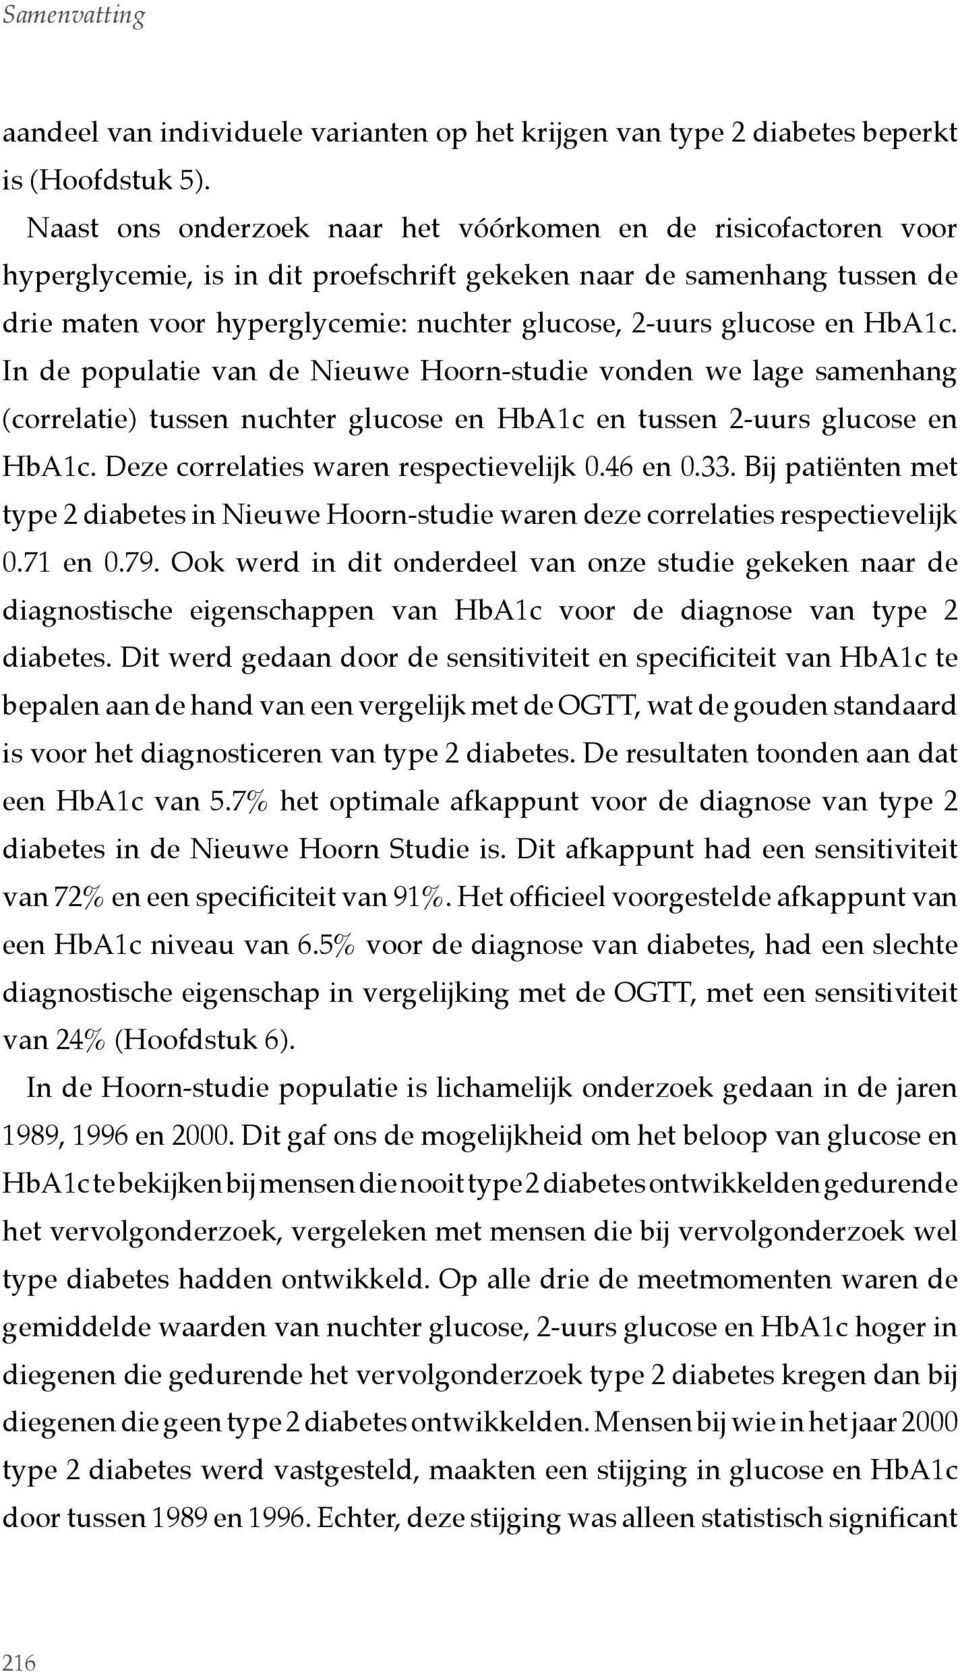 glucose en HbA1c. In de populatie van de Nieuwe Hoorn-studie vonden we lage samenhang (correlatie) tussen nuchter glucose en HbA1c en tussen 2-uurs glucose en HbA1c.